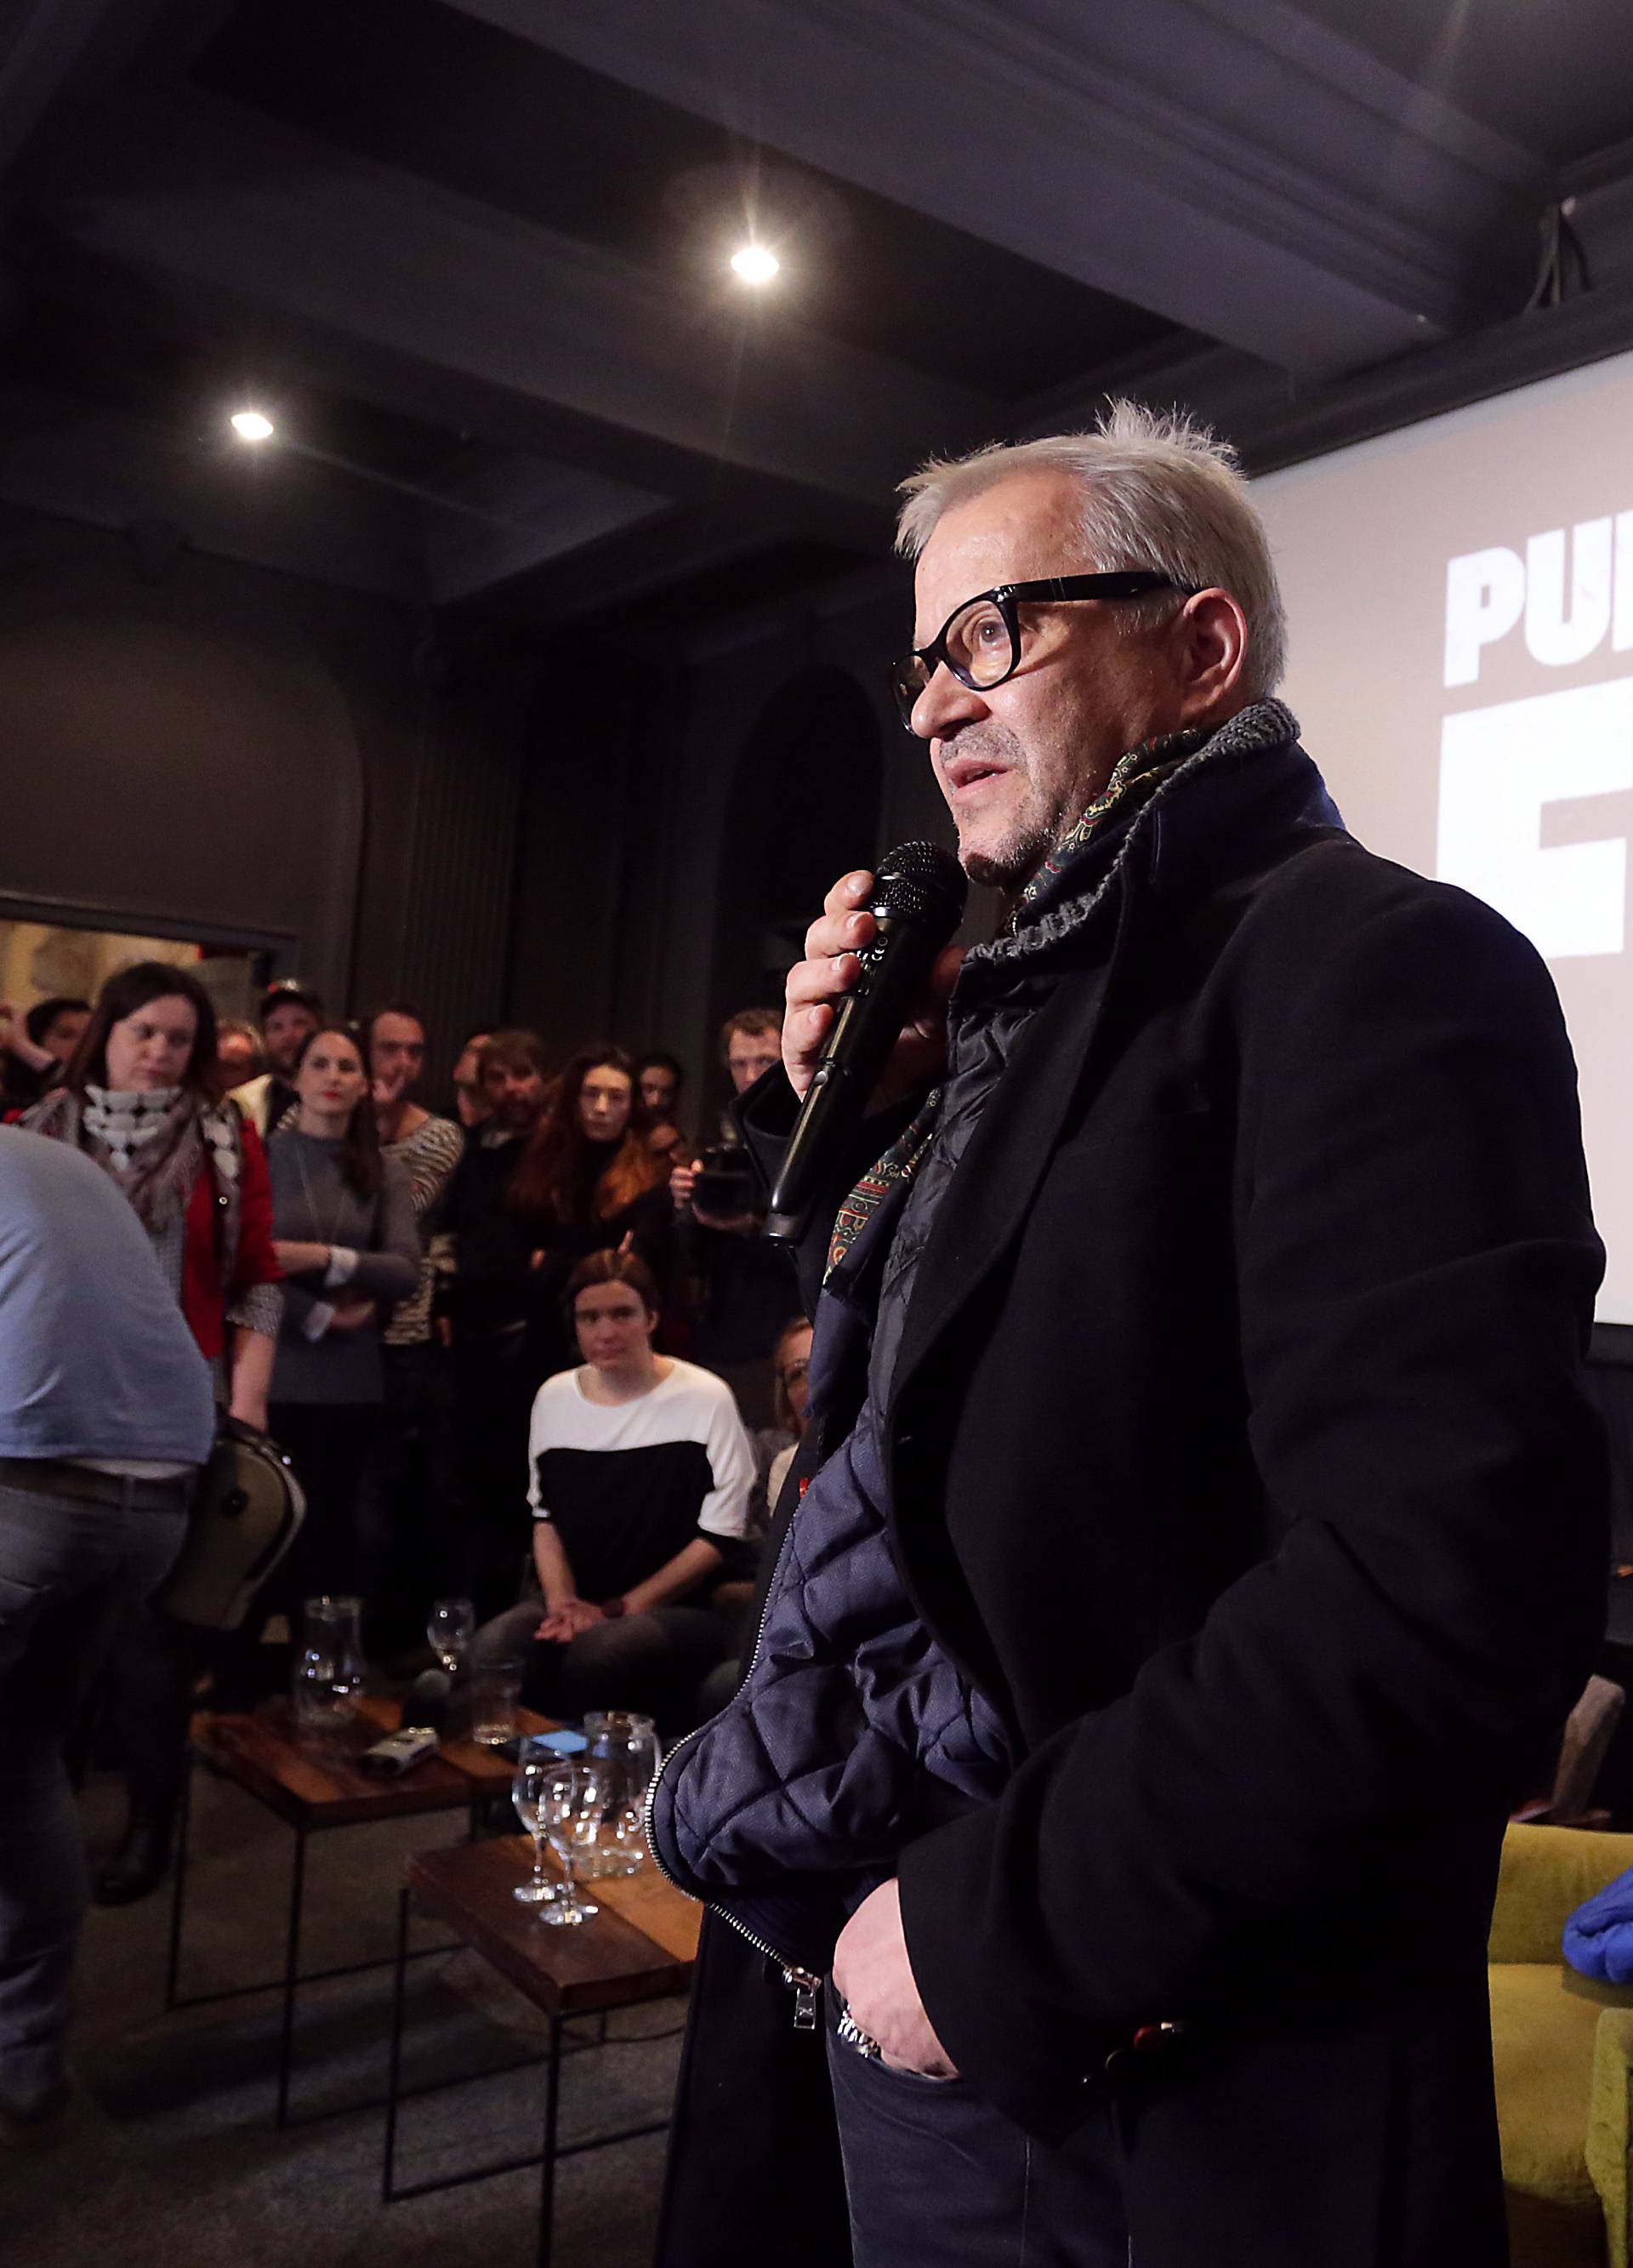 "Puk'o nam je film": Stanje u našem društvu je alarmantno